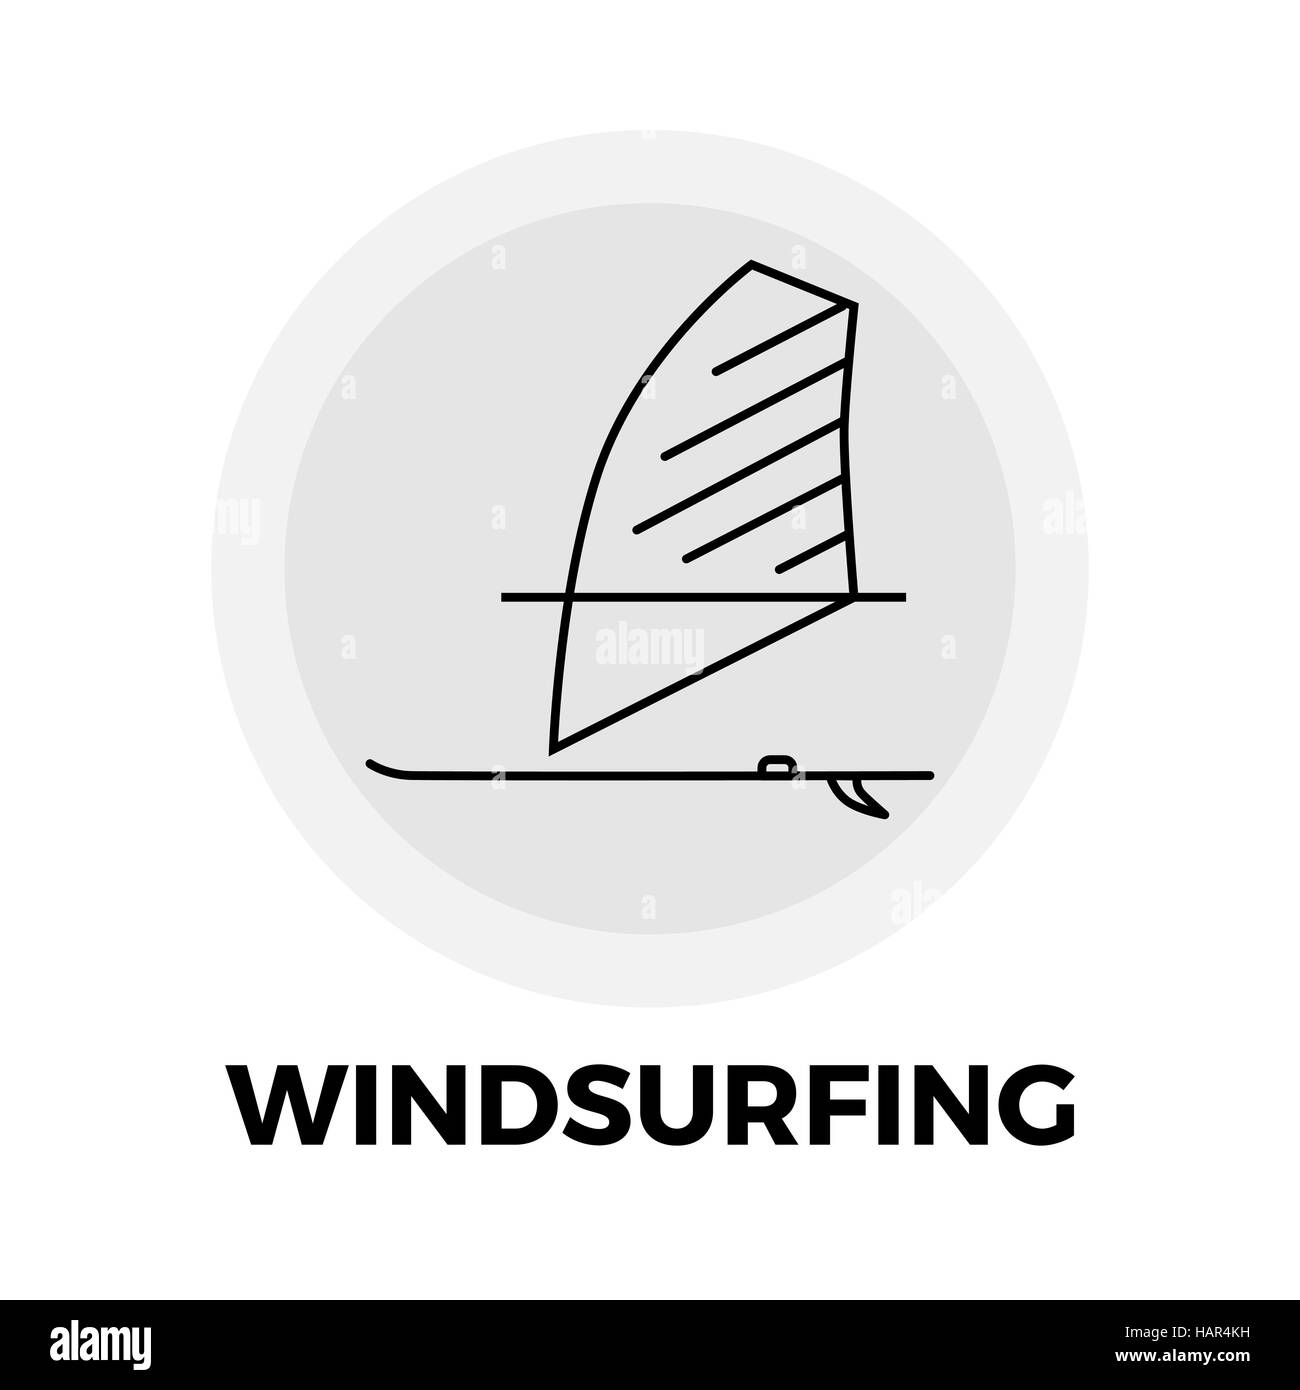 Icona di windsurf vettore. Icona di windsurf piatta. Windsurf immagine dell'icona. Windsurf oggetto Icon. Windsurf icona Linea. Icona di windsurf grafica. Vento Illustrazione Vettoriale